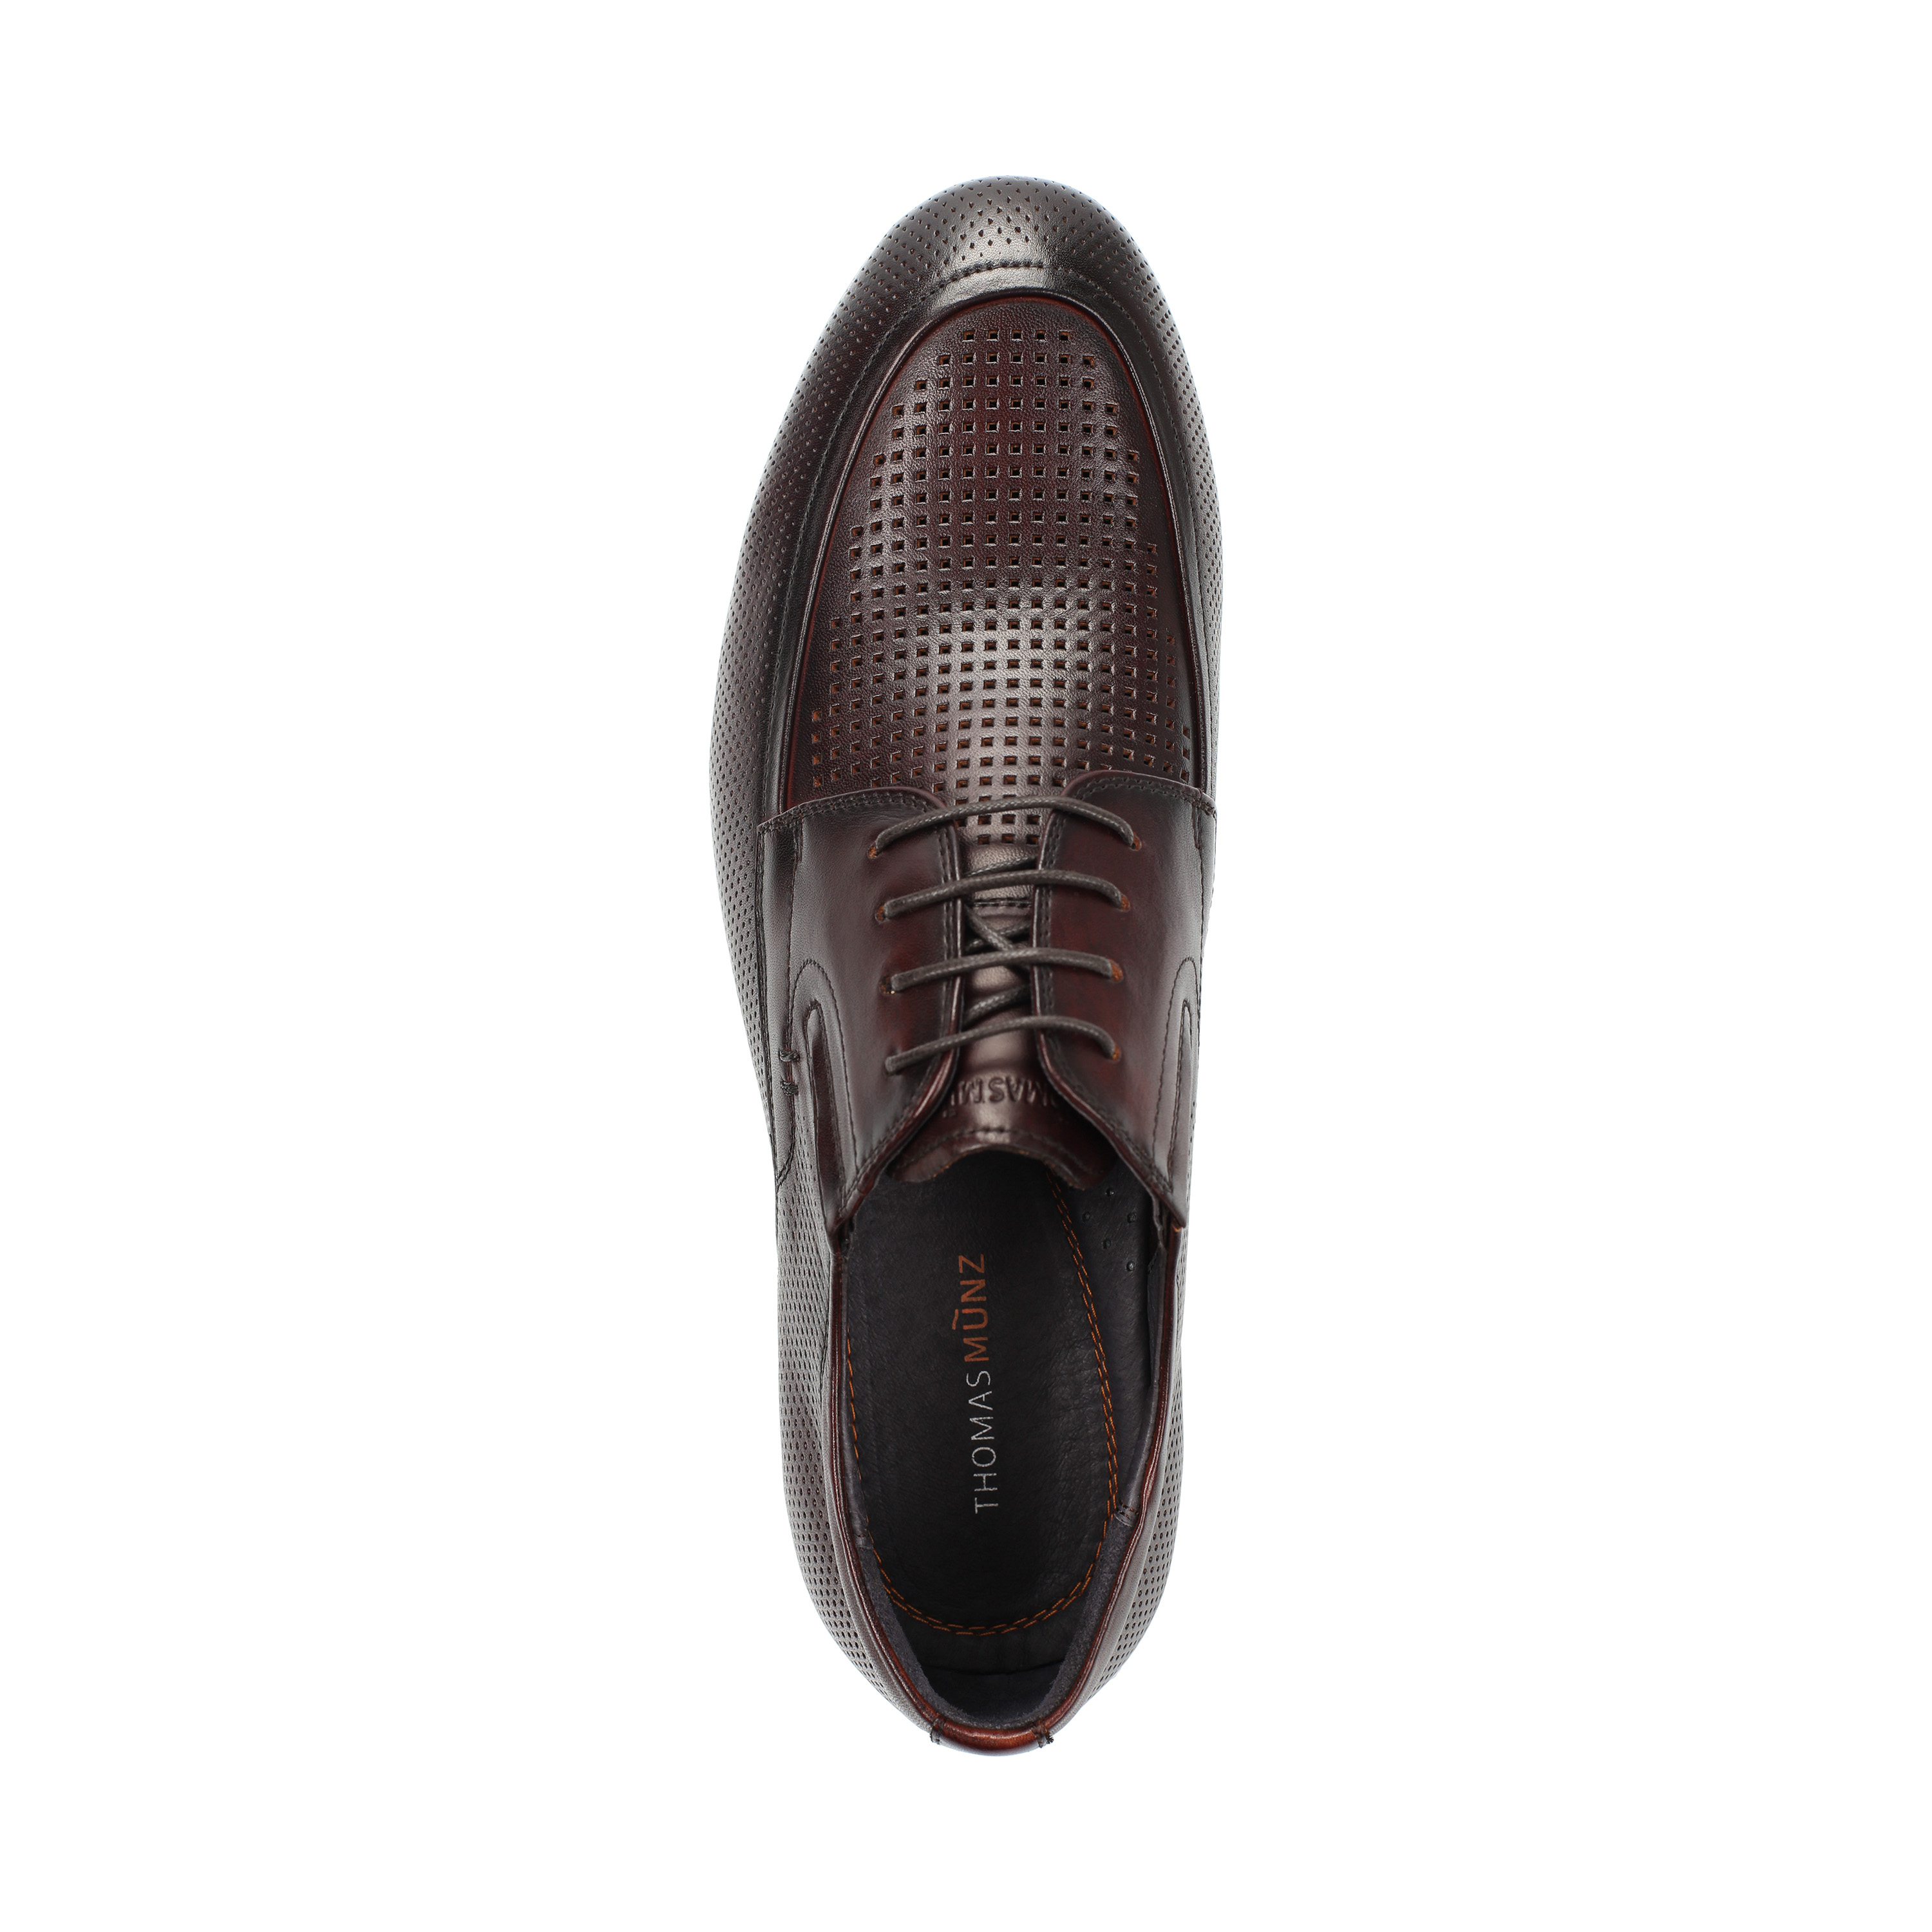 Туфли Thomas Munz 058-115B-1109 058-115B-1109, цвет коричневый, размер 41 полуботинки - фото 5